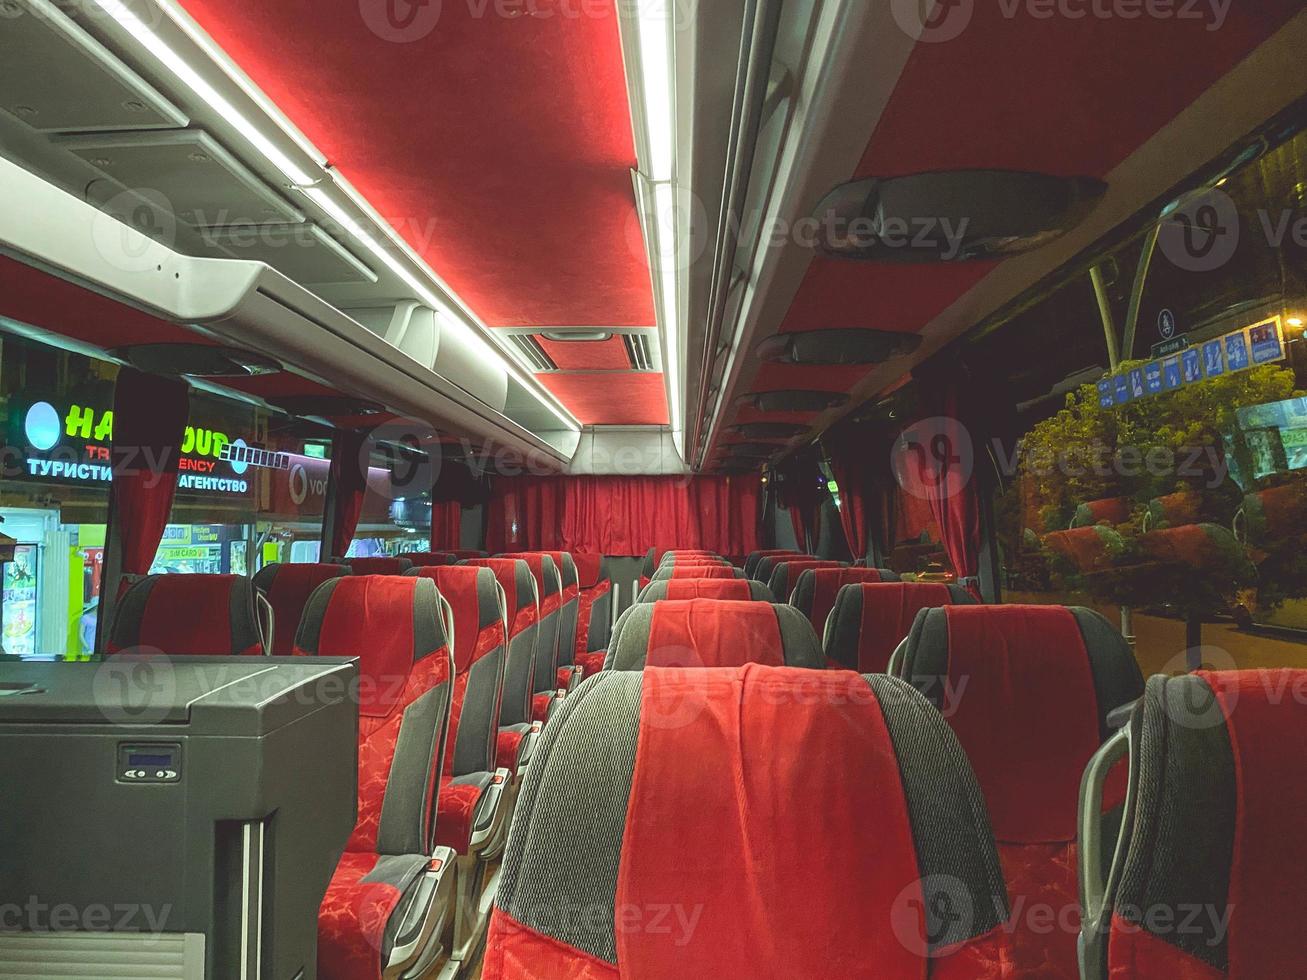 cómodo y caro autobús con suaves asientos de terciopelo rojo. caro interior del autobús con muchos lugares para turistas. viajar por tierra foto